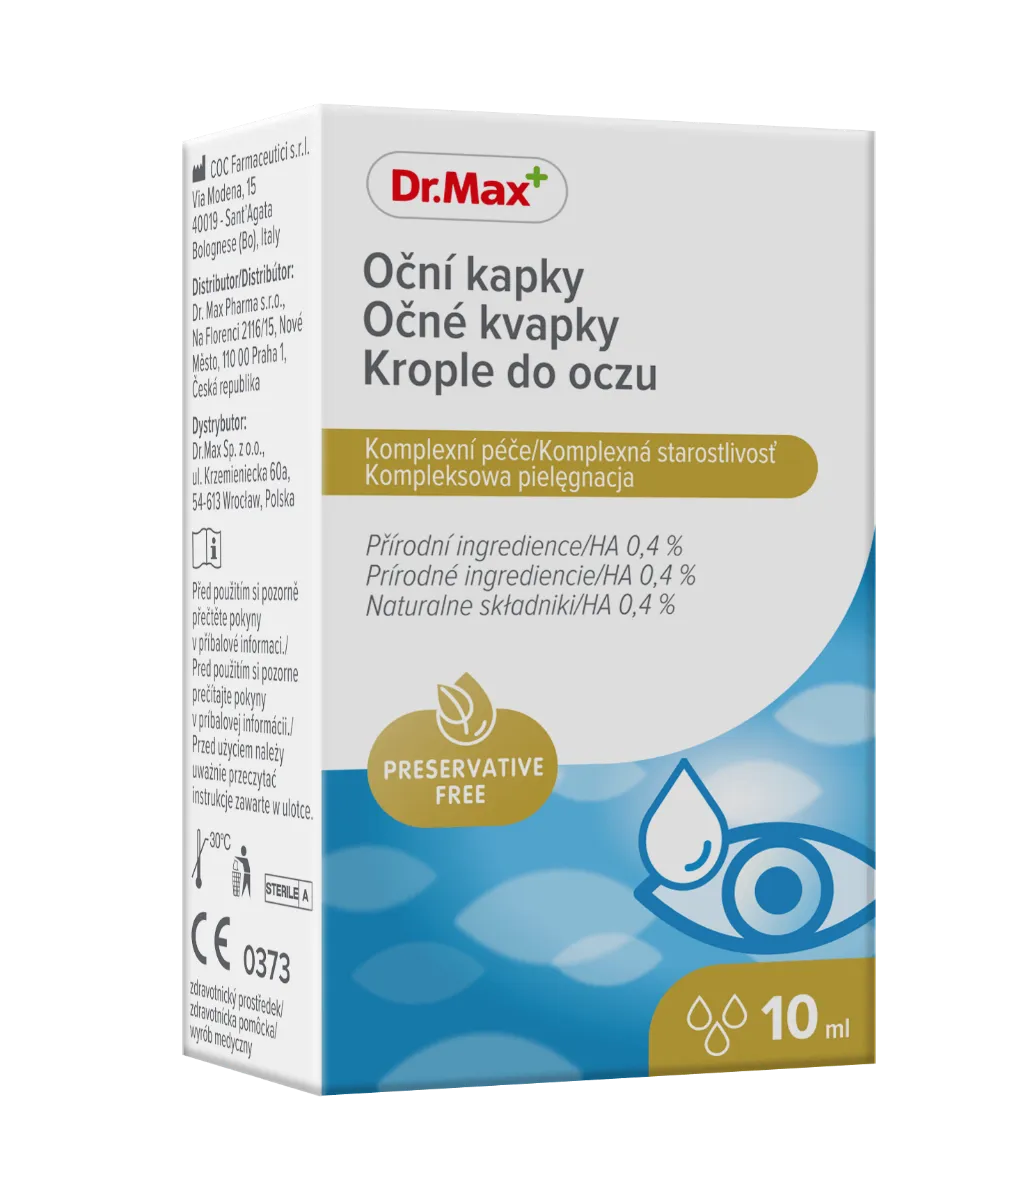 Regeneracyjne i ochronne krople do oczu Dr.Max, 10 ml